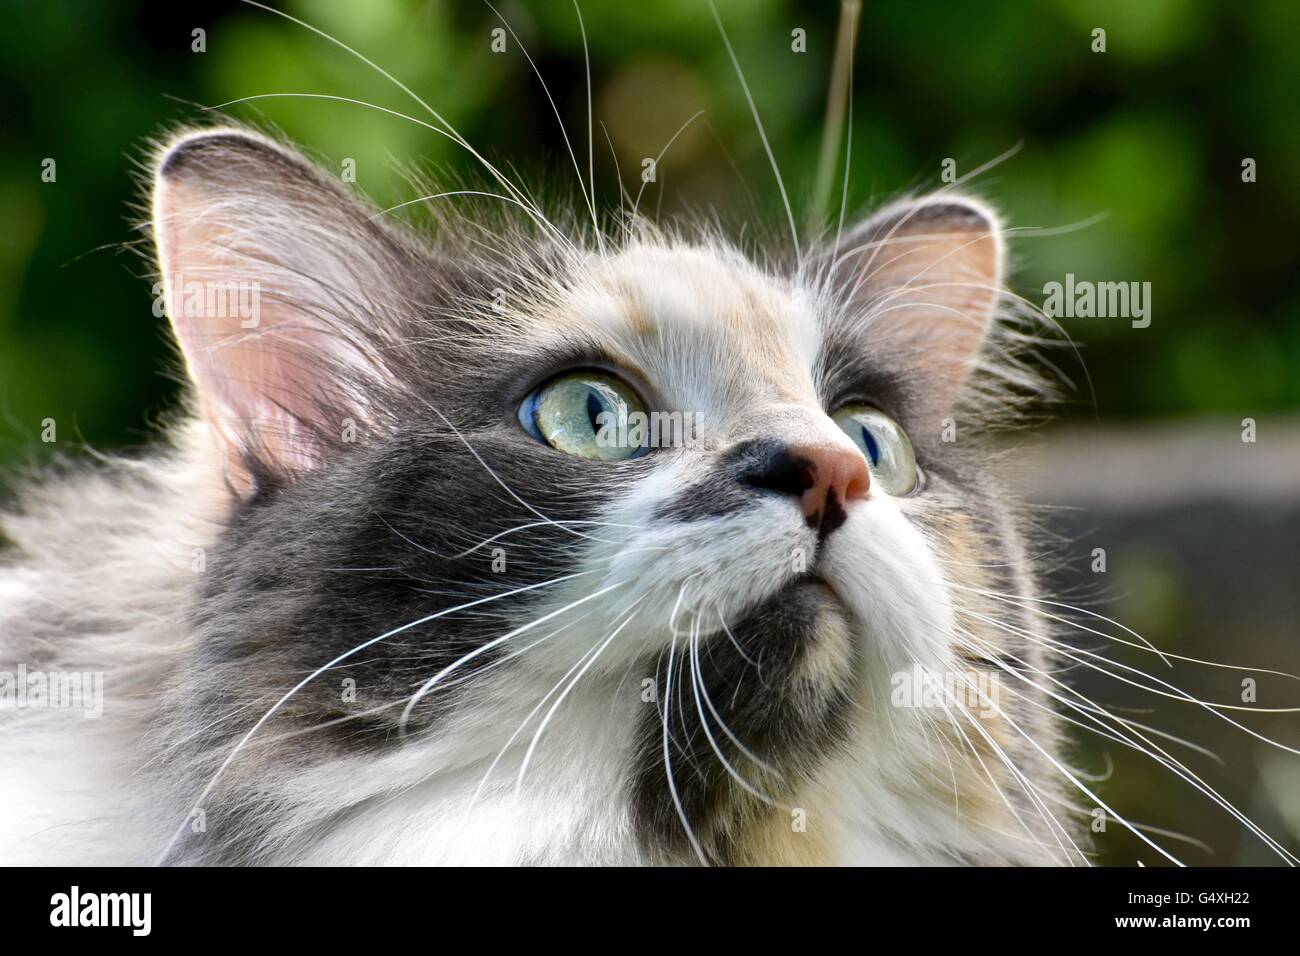 Une magnifique chevelure longue chat calico joue dehors sur une chaude journée d'été Banque D'Images